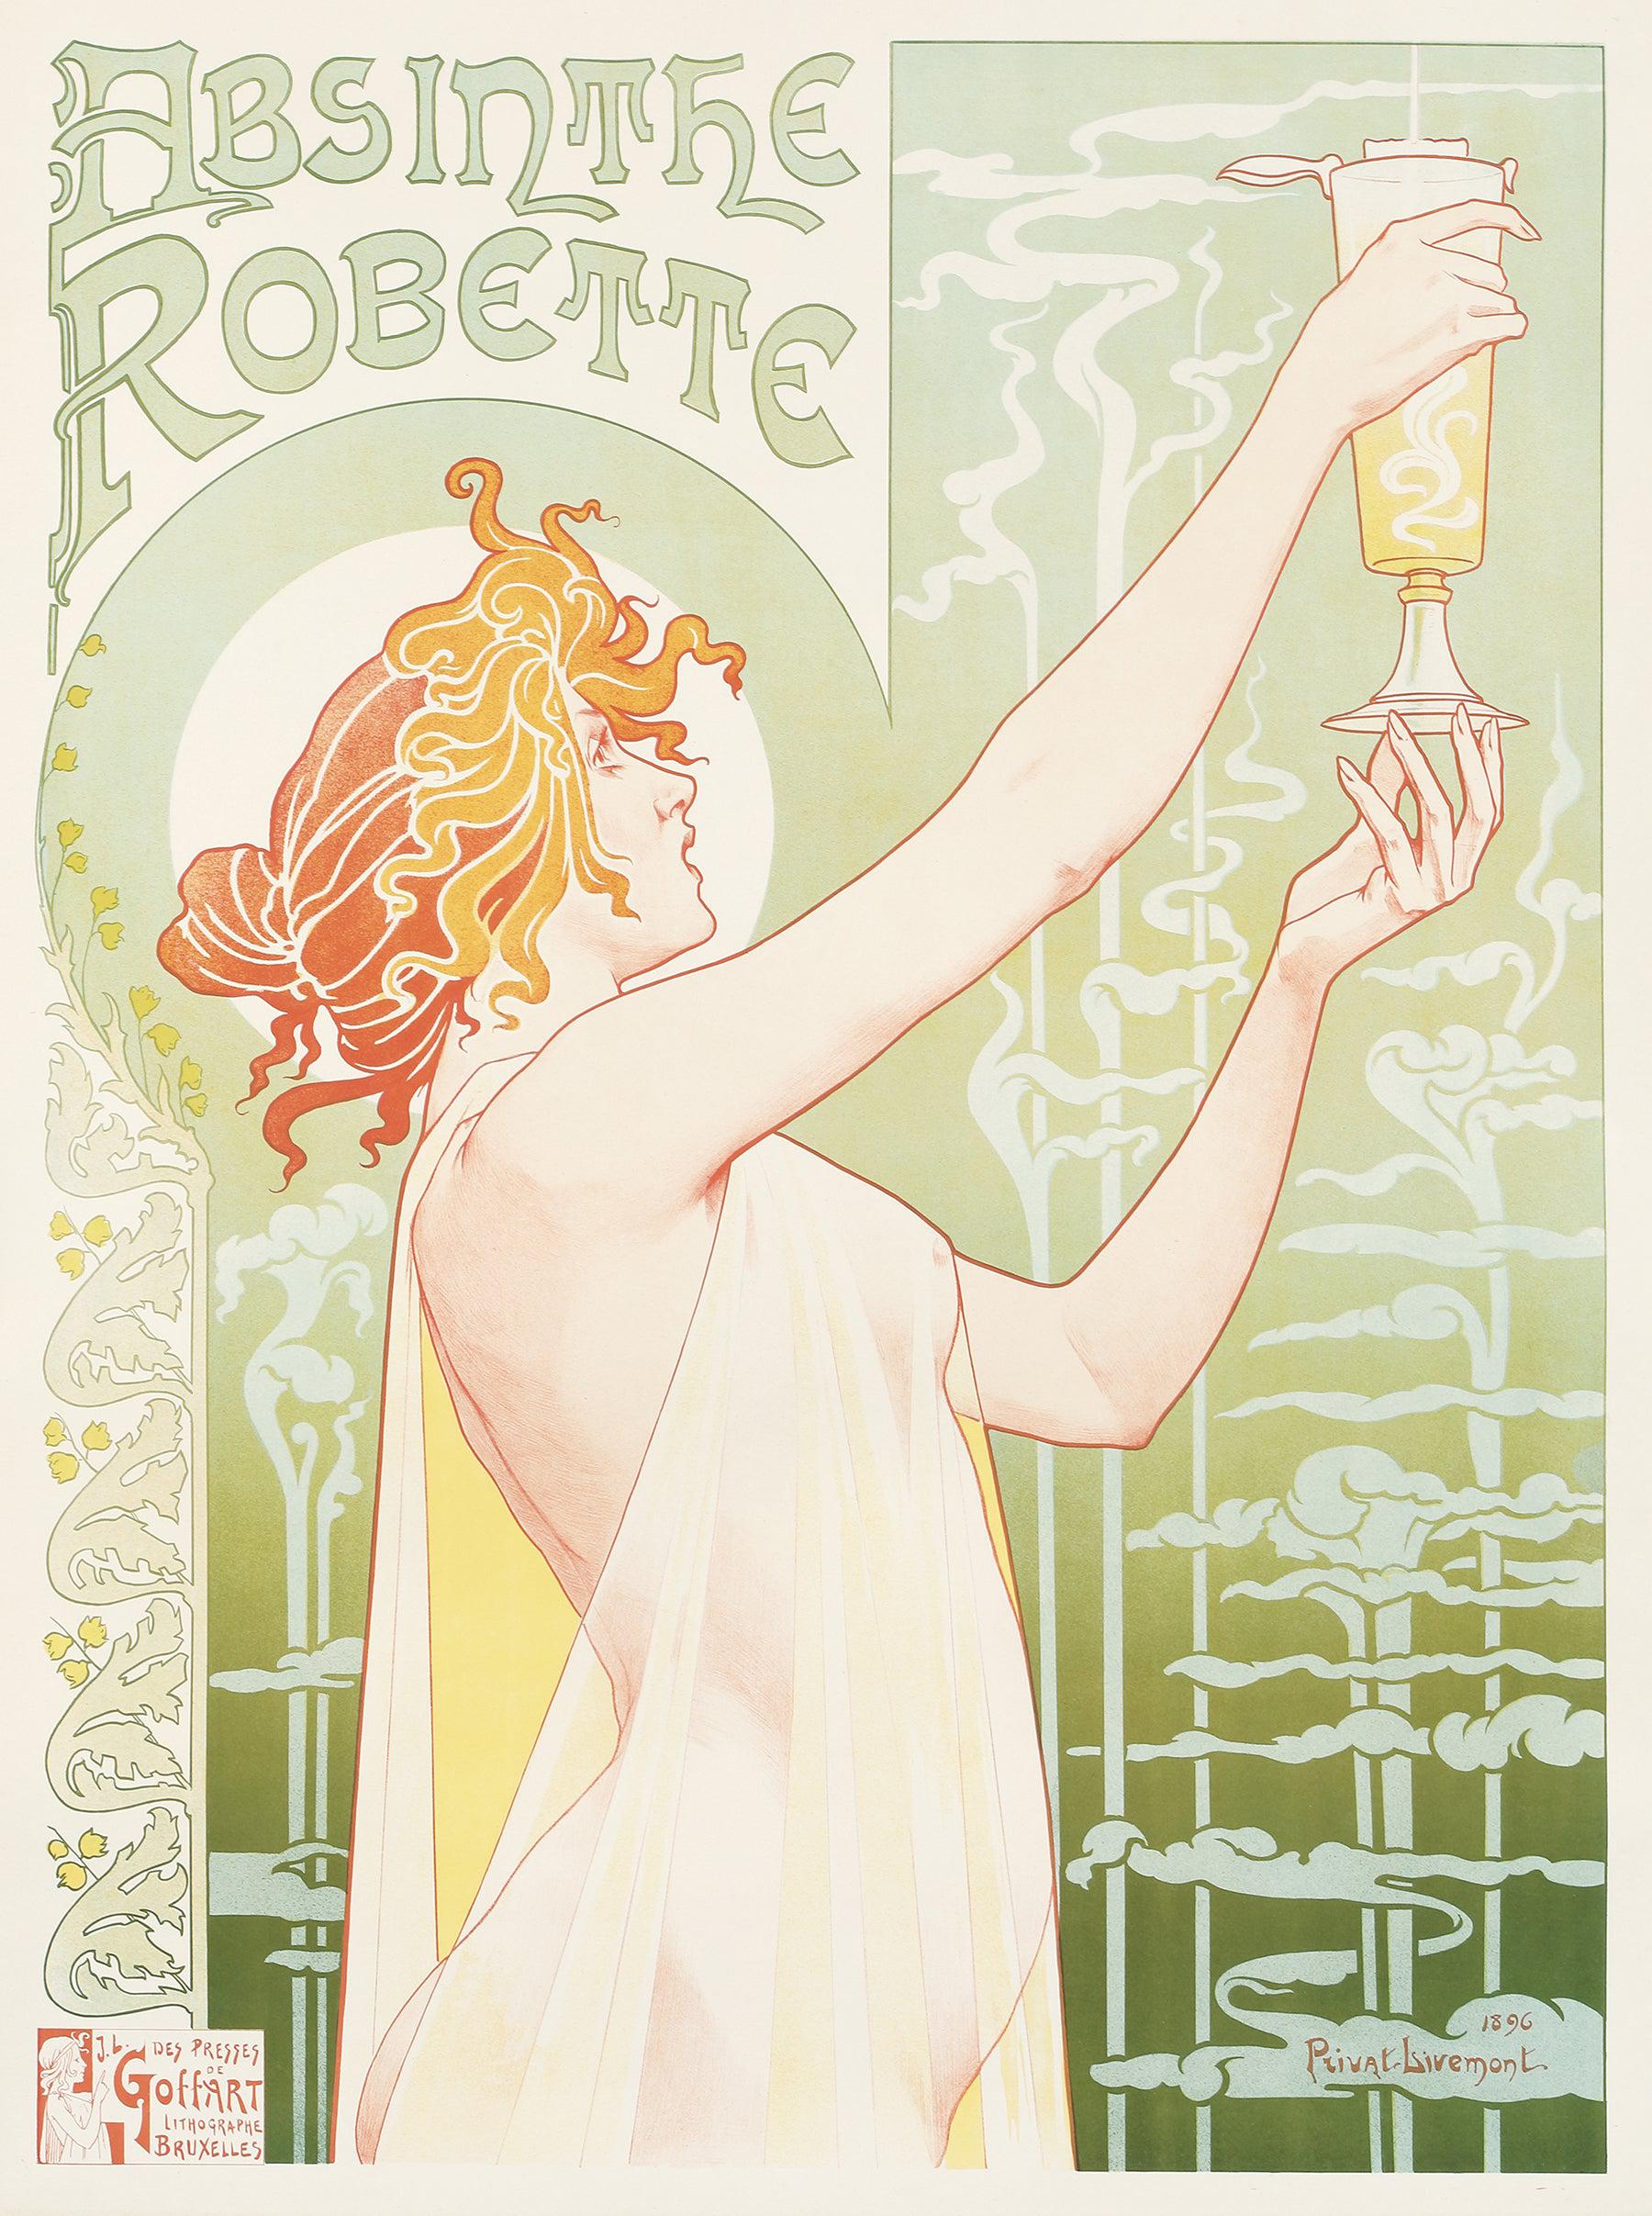 Original Rare Absinthe Robette Poster by Henri Privat-Livemont 1896 Art Nouveau